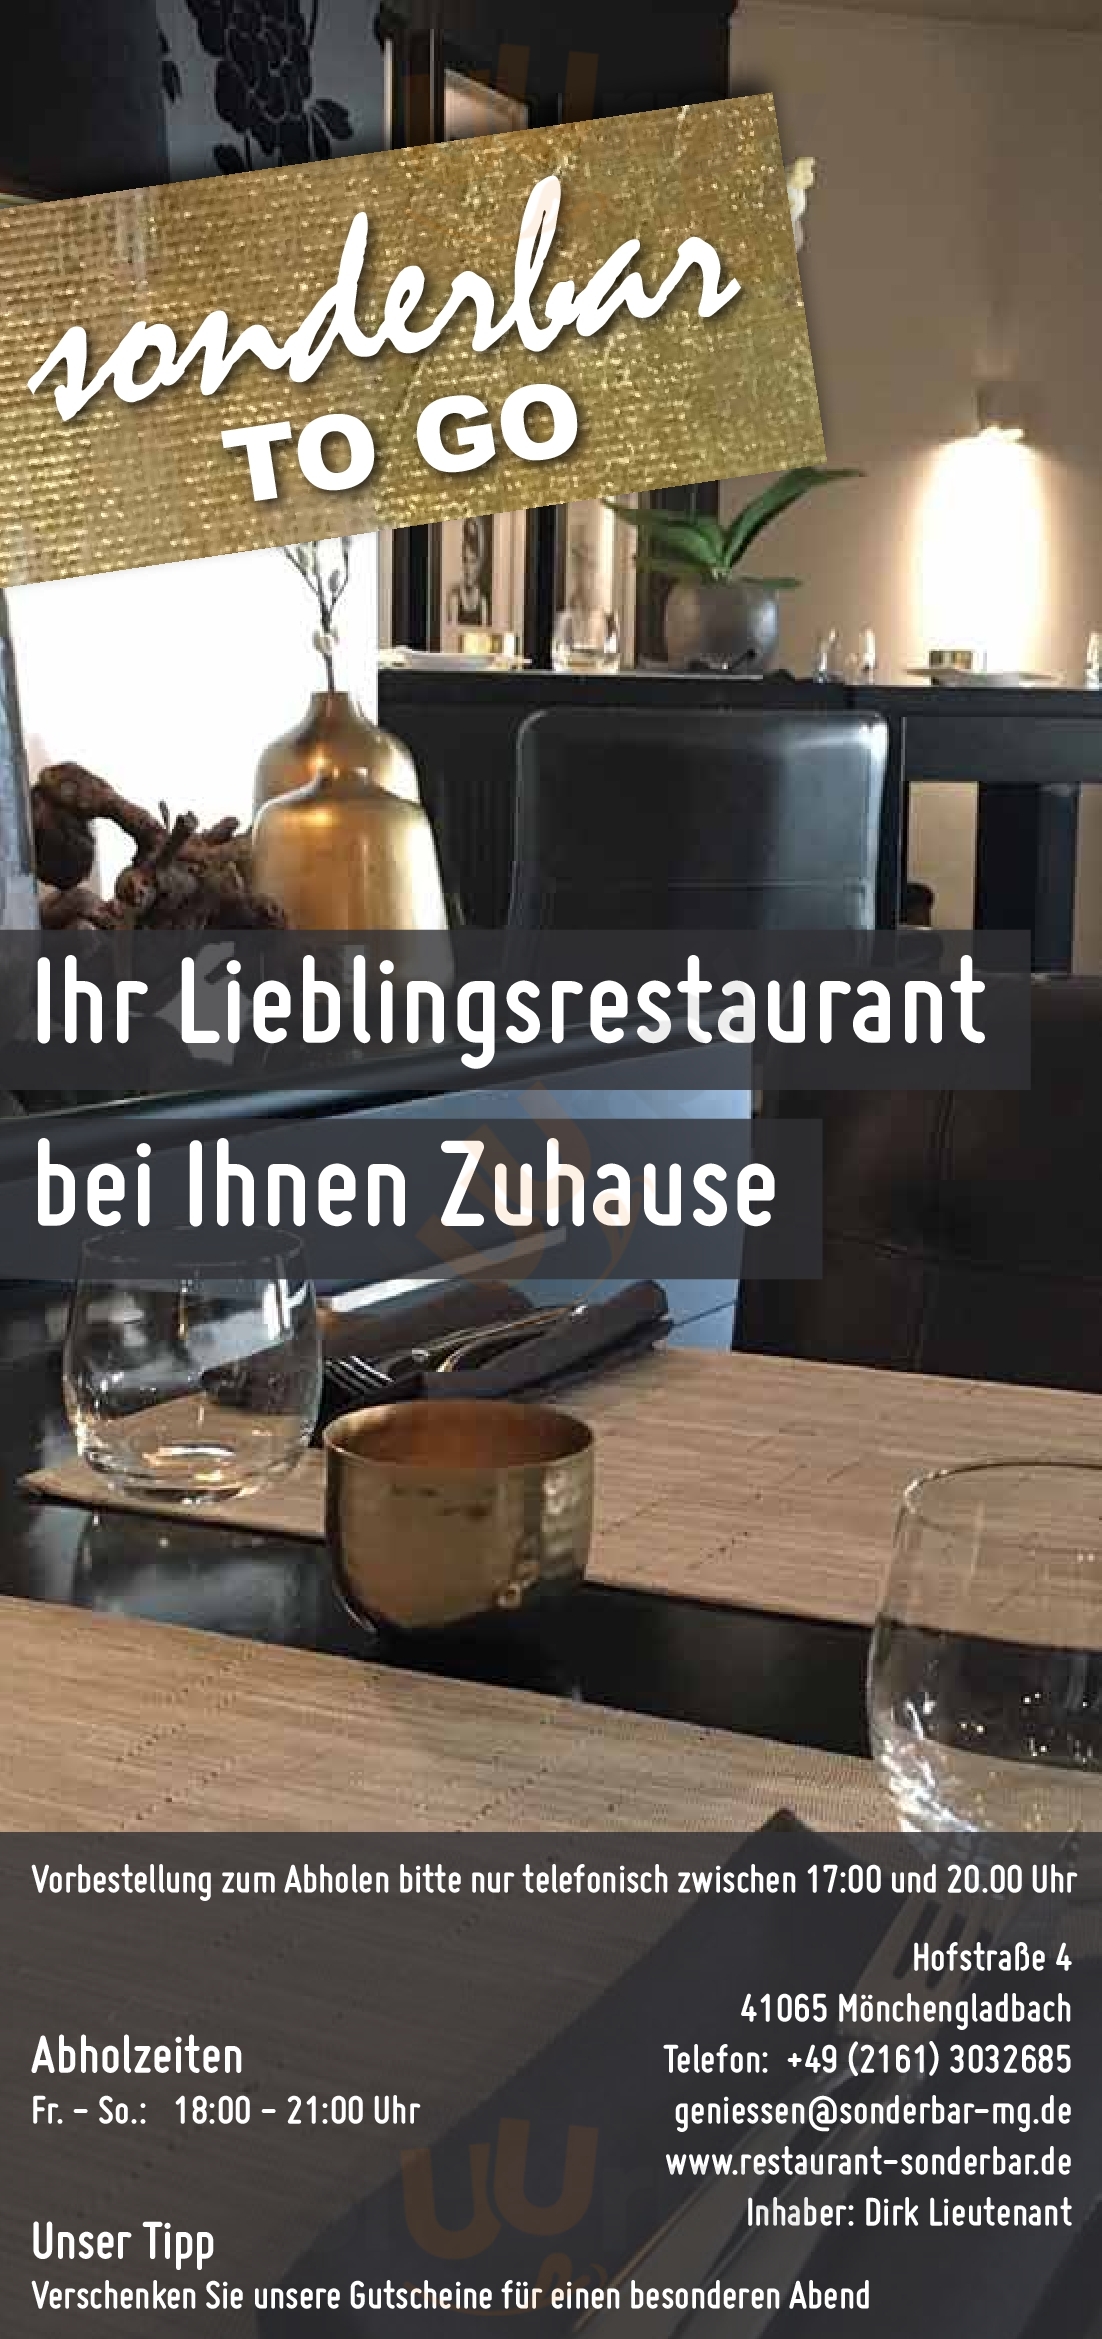 Restaurant Sonderbar Mönchengladbach Menu - 1